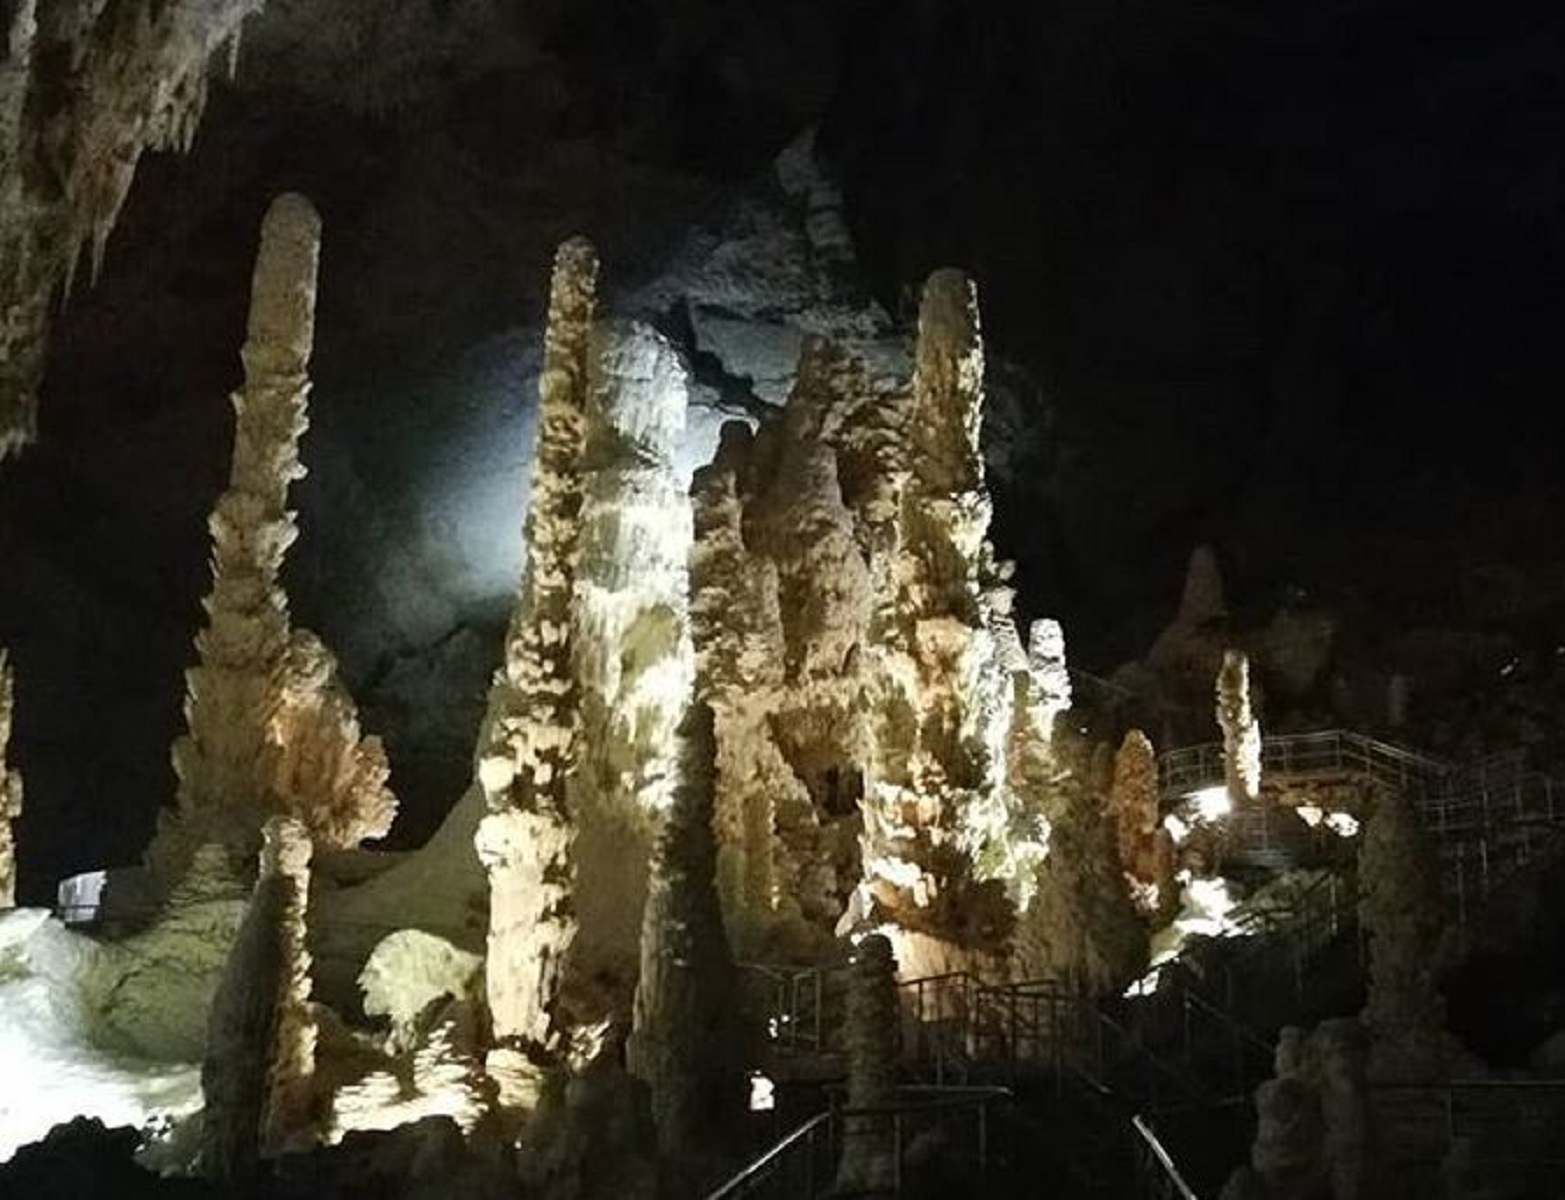 Grotte di Frasassi: come arrivare e prezzi dei biglietti